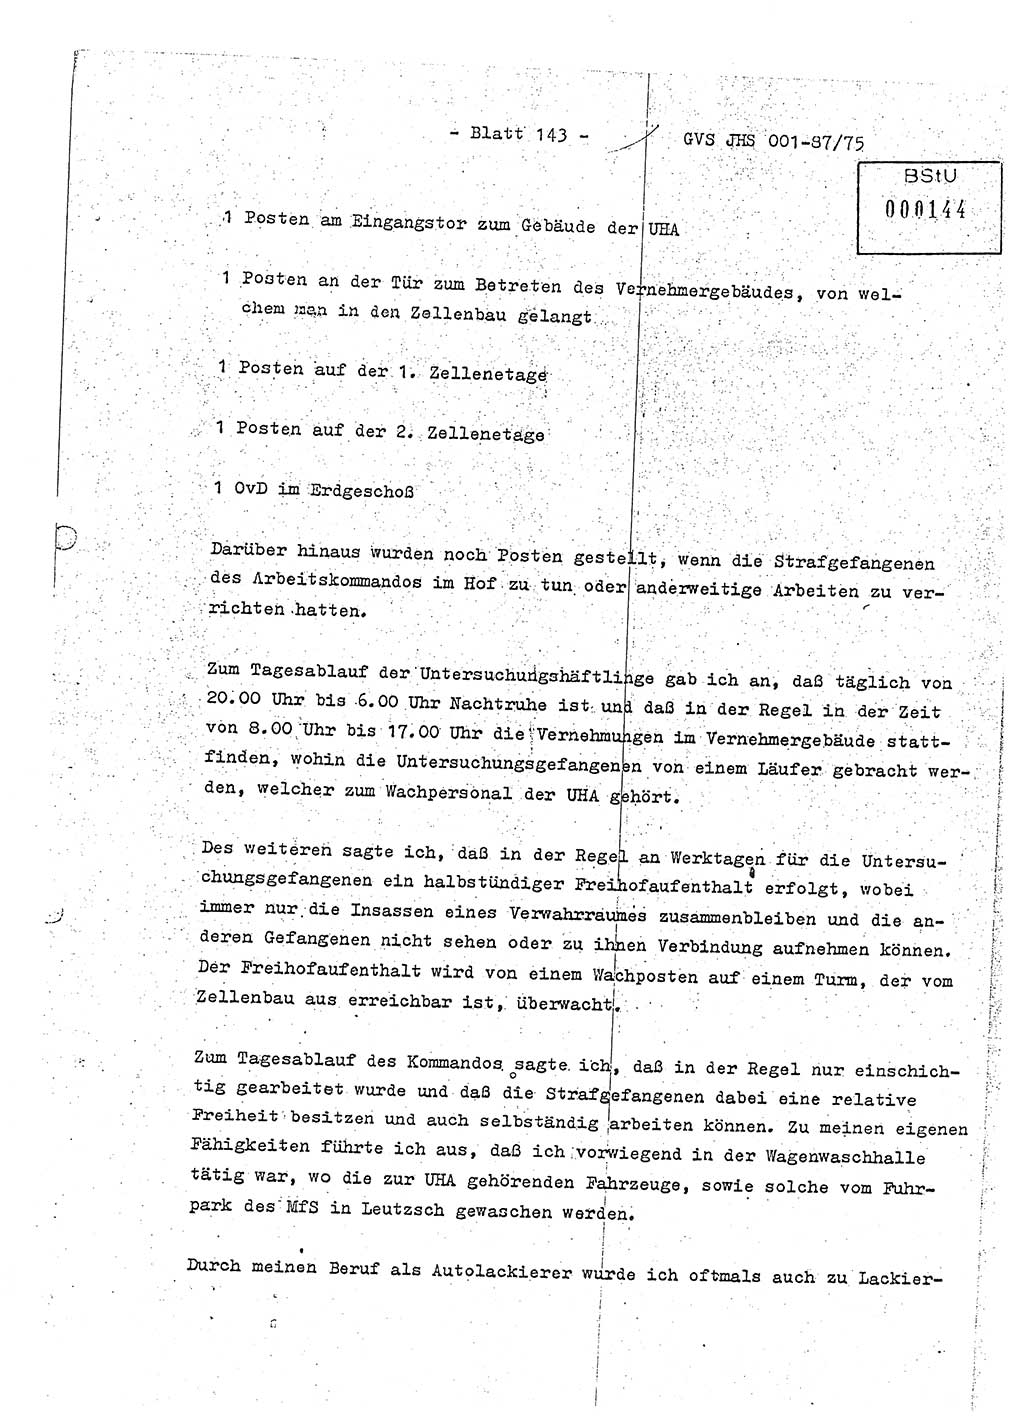 Diplomarbeit Hauptmann Volkmar Heinz (Abt. ⅩⅣ), Oberleutnant Lothar Rüdiger (BV Lpz. Abt. Ⅺ), Ministerium für Staatssicherheit (MfS) [Deutsche Demokratische Republik (DDR)], Juristische Hochschule (JHS), Geheime Verschlußsache (GVS) o001-87/75, Potsdam 1975, Seite 143 (Dipl.-Arb. MfS DDR JHS GVS o001-87/75 1975, S. 143)